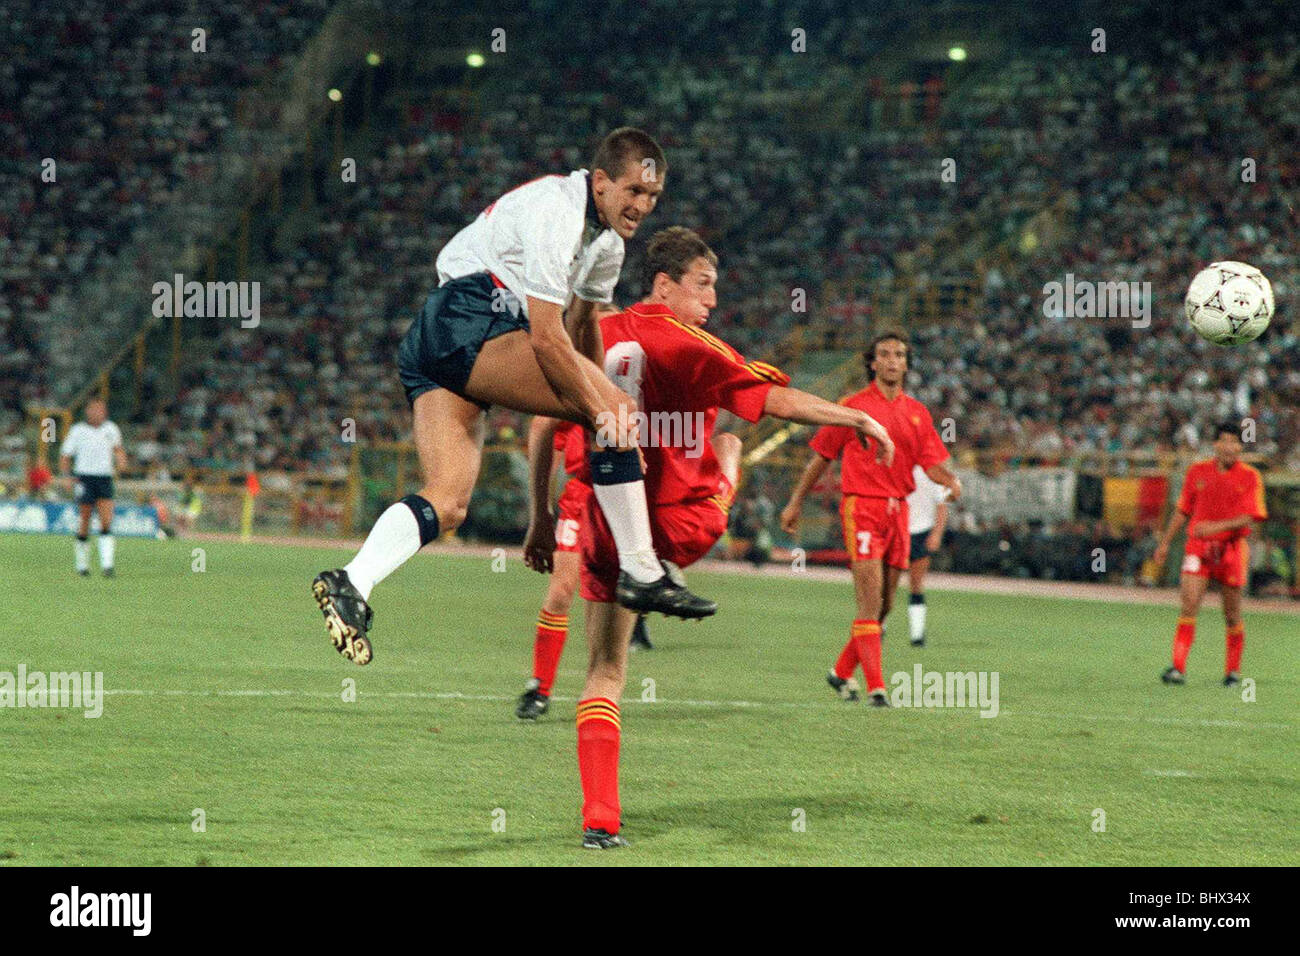 Welt Cup 1990 letzte 16 England 1 Belgien 0 nach Verlängerung Steve Bull (weiß) Köpfe den Ball Weg von Franky Van Der Elst Stockfoto